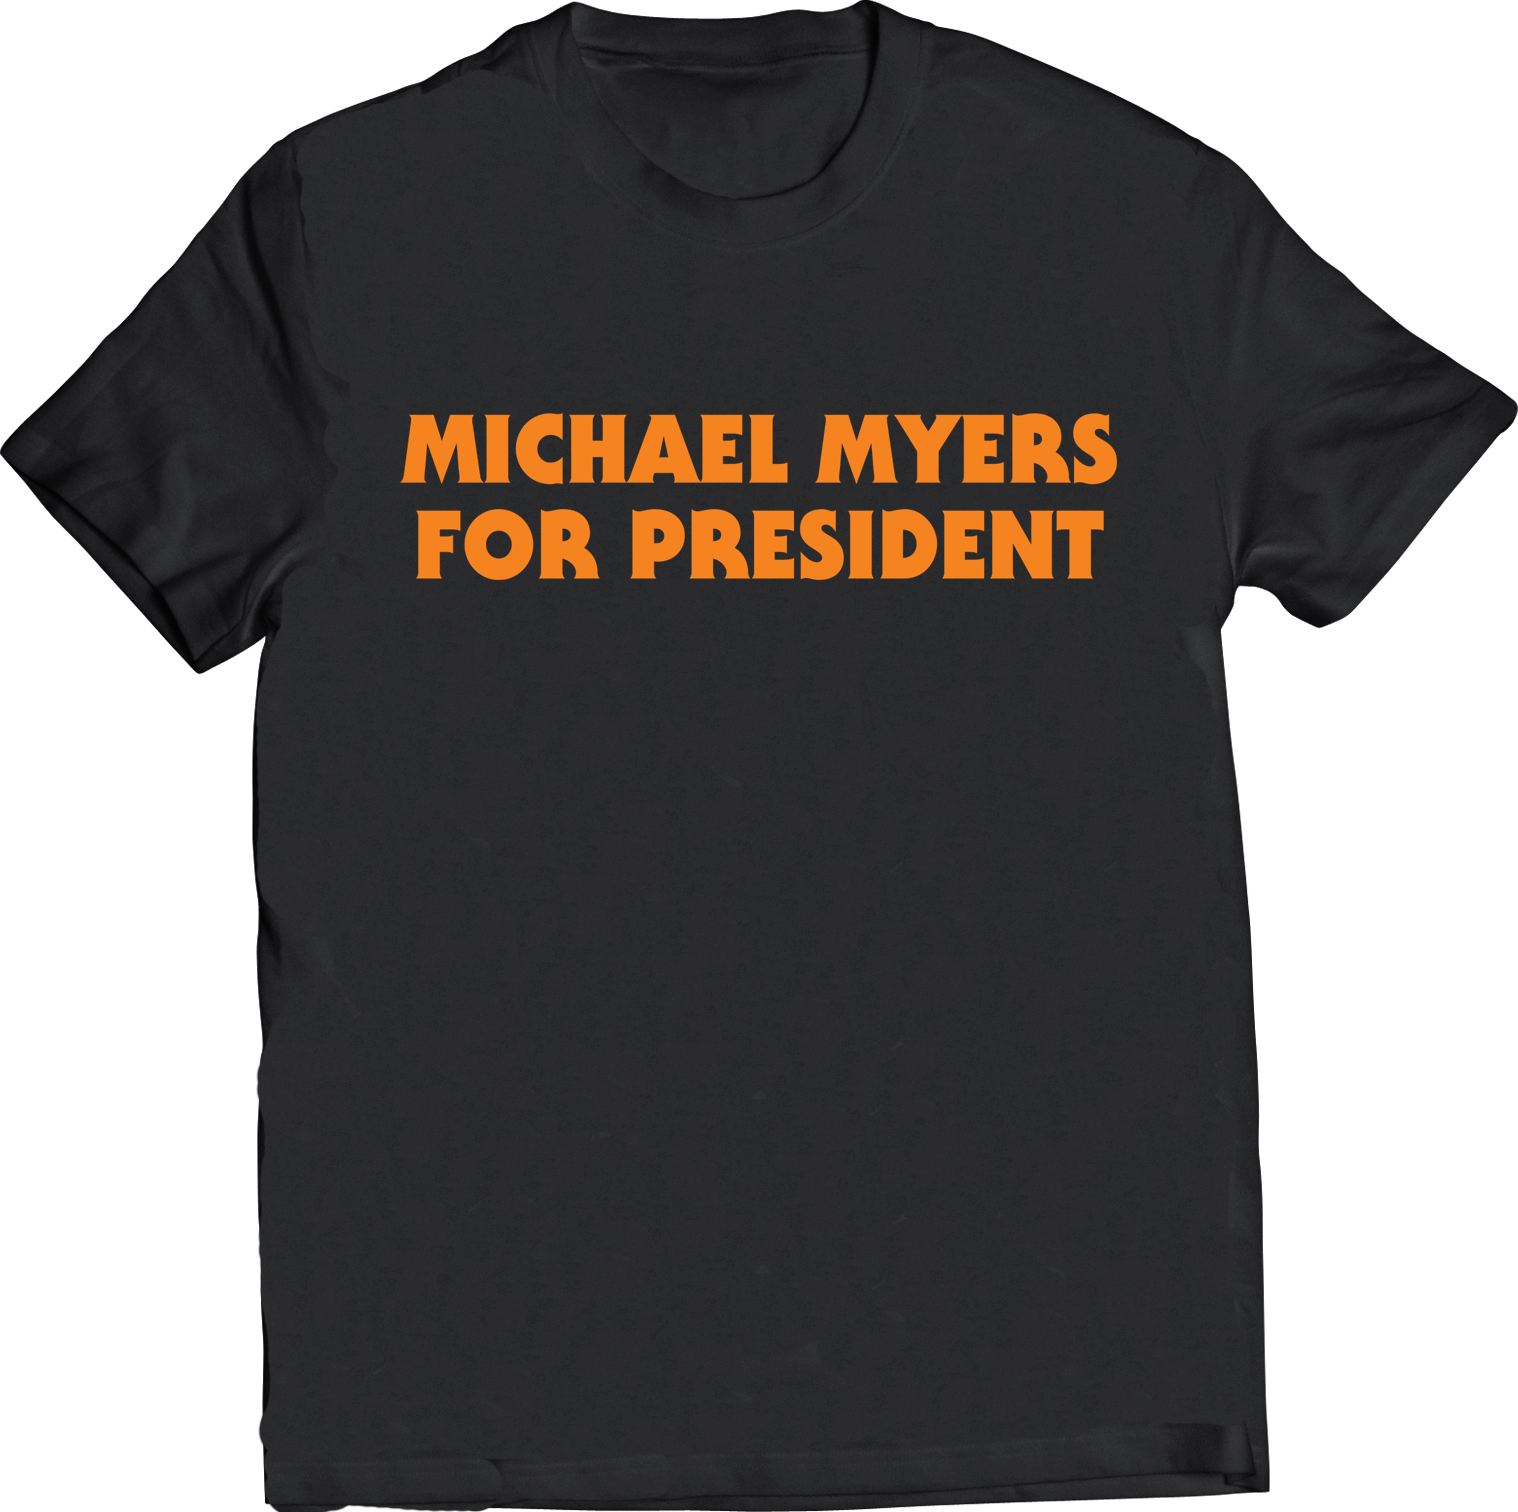 MICHAEL MYERS FOR PRESIDENT T-SHIRT